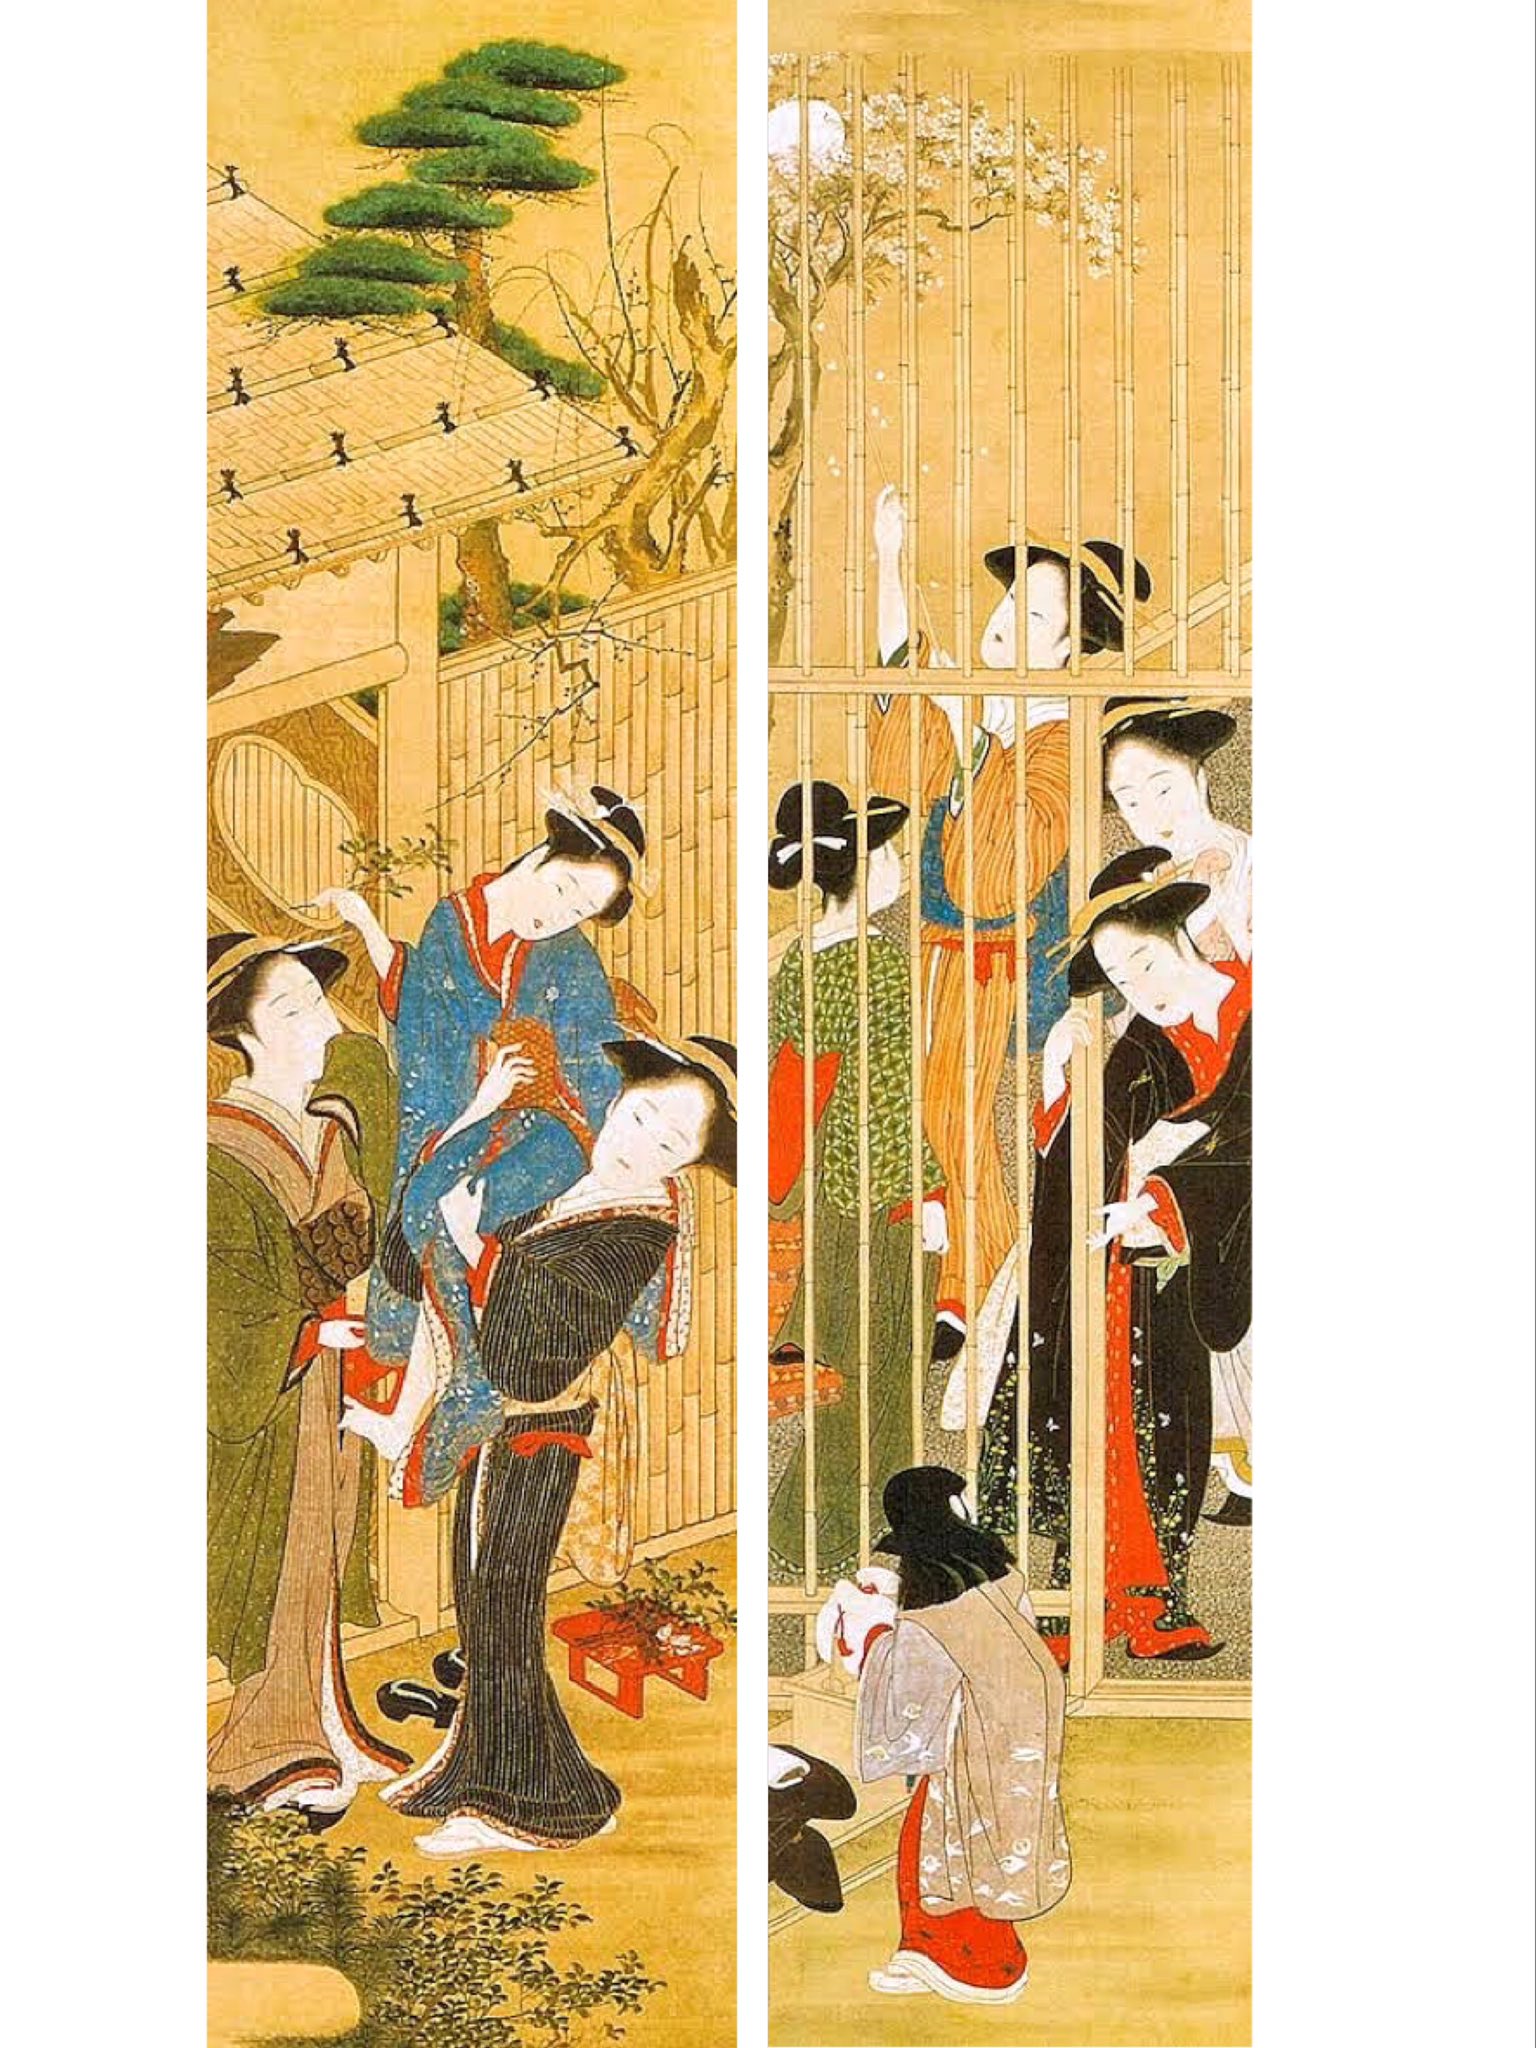 南馆潇湘on Twitter 浮世绘 赏 7 5 葛饰北斋是十八世纪至十九世纪中叶十分活跃的画师他在10年达到了绘画巅峰创造出一生中最精彩的风景系列